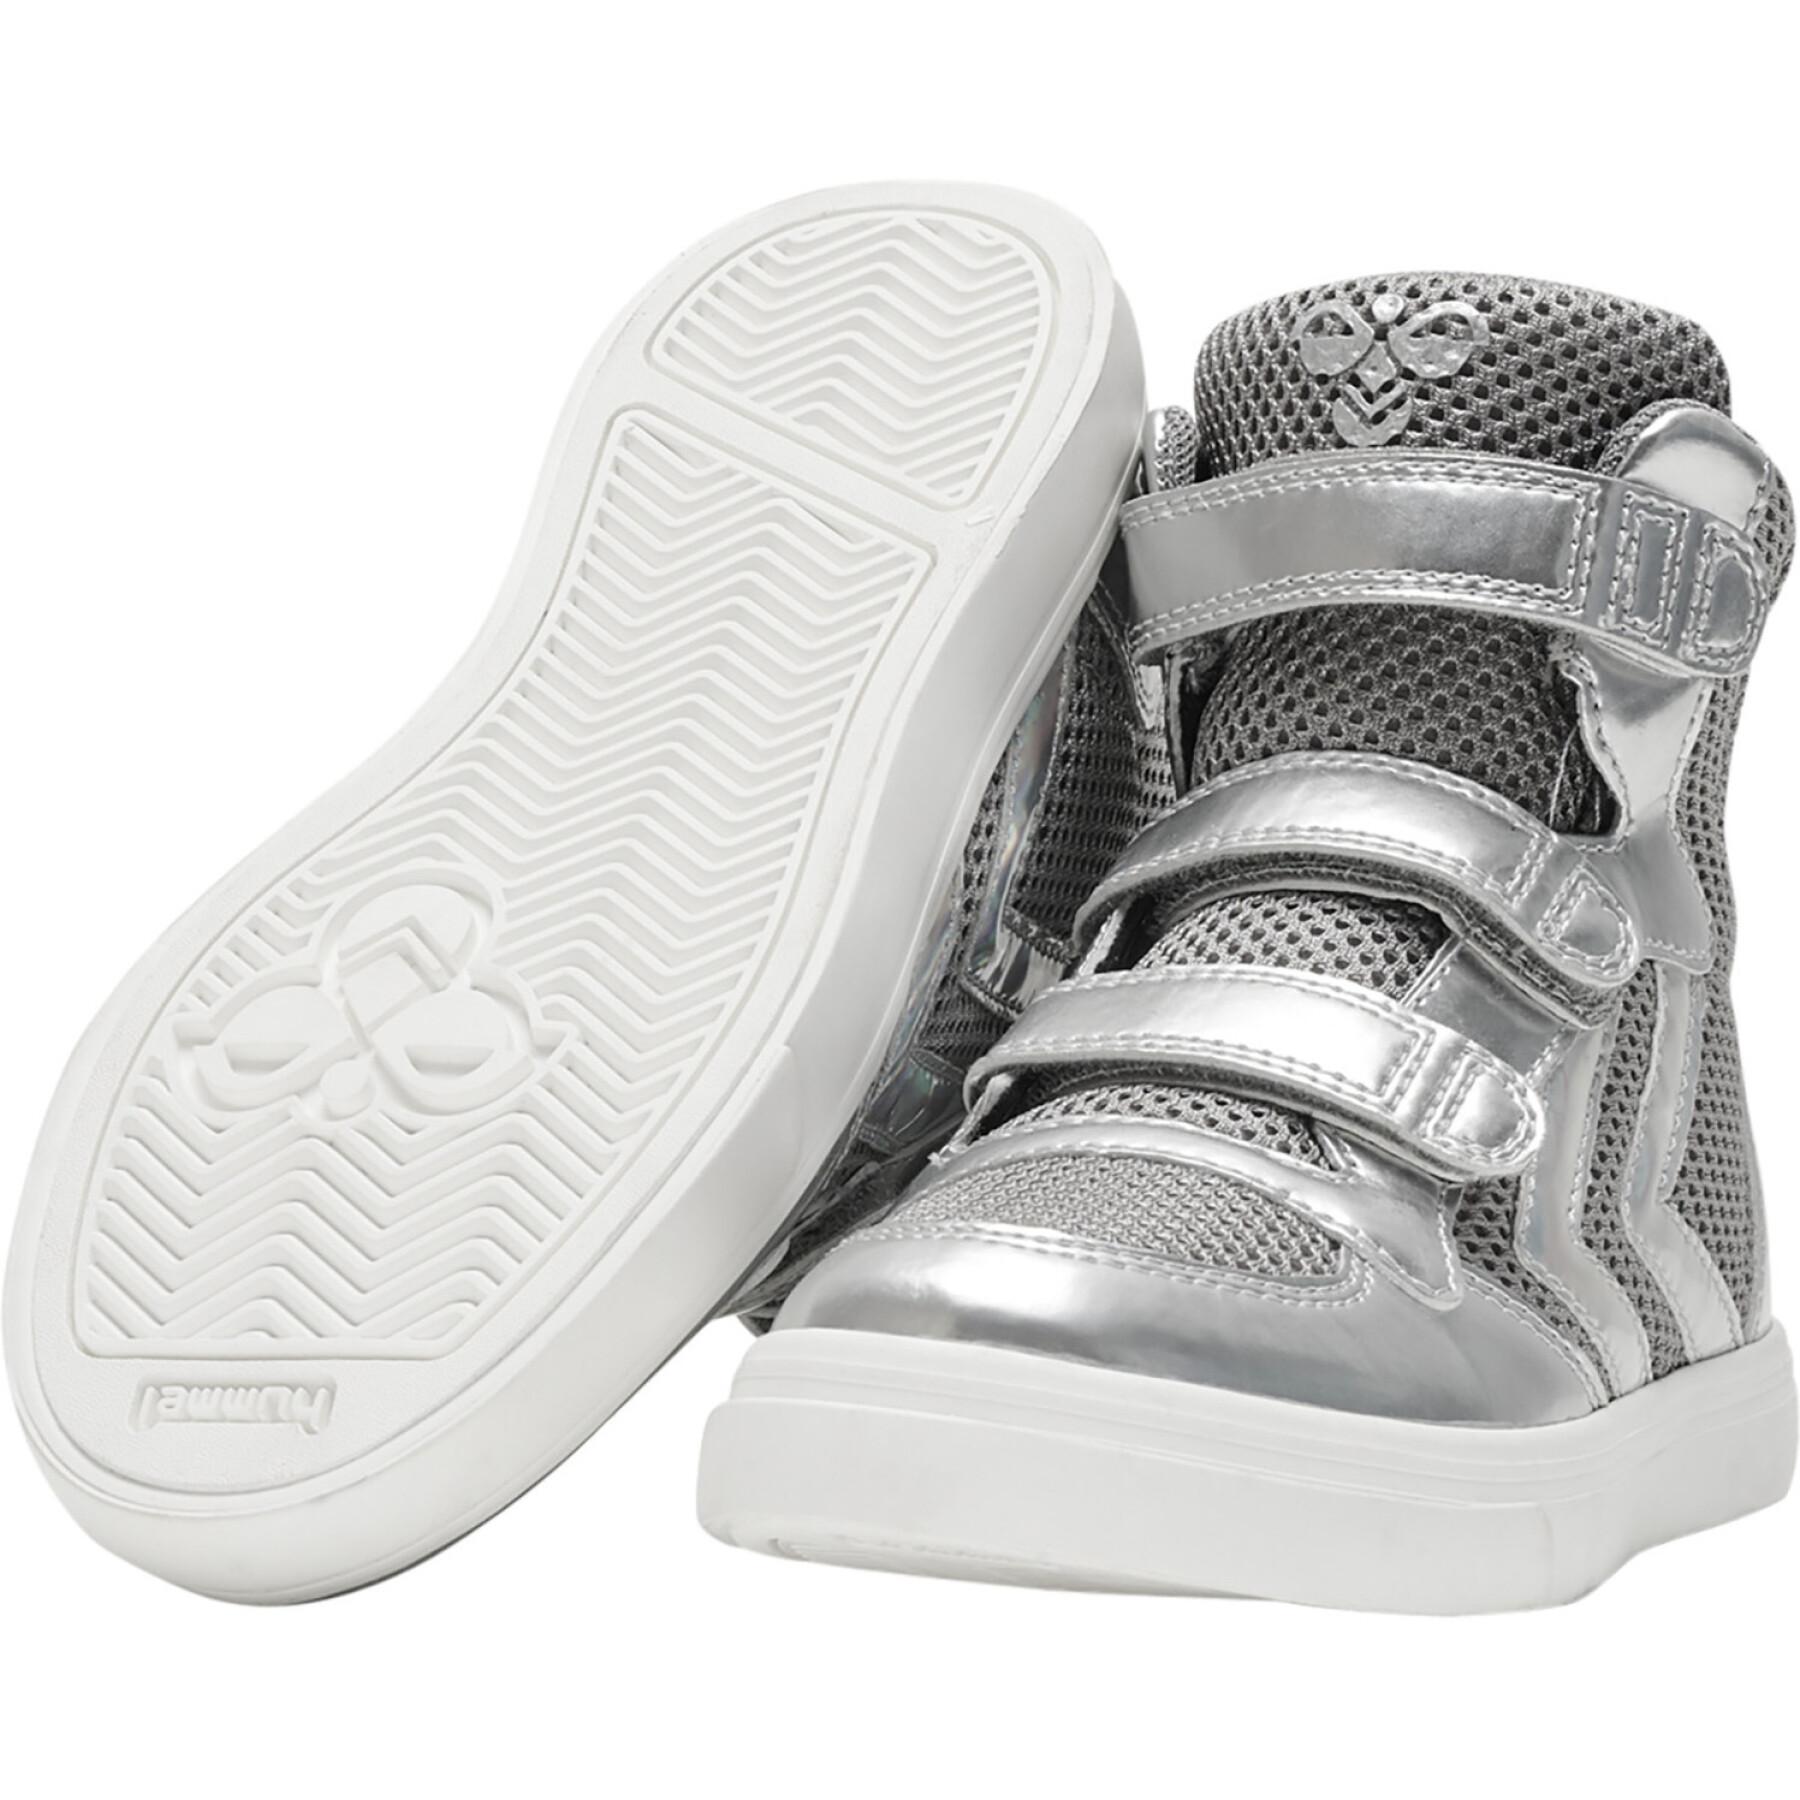 Children's sneakers Hummel STADIL GLITTER